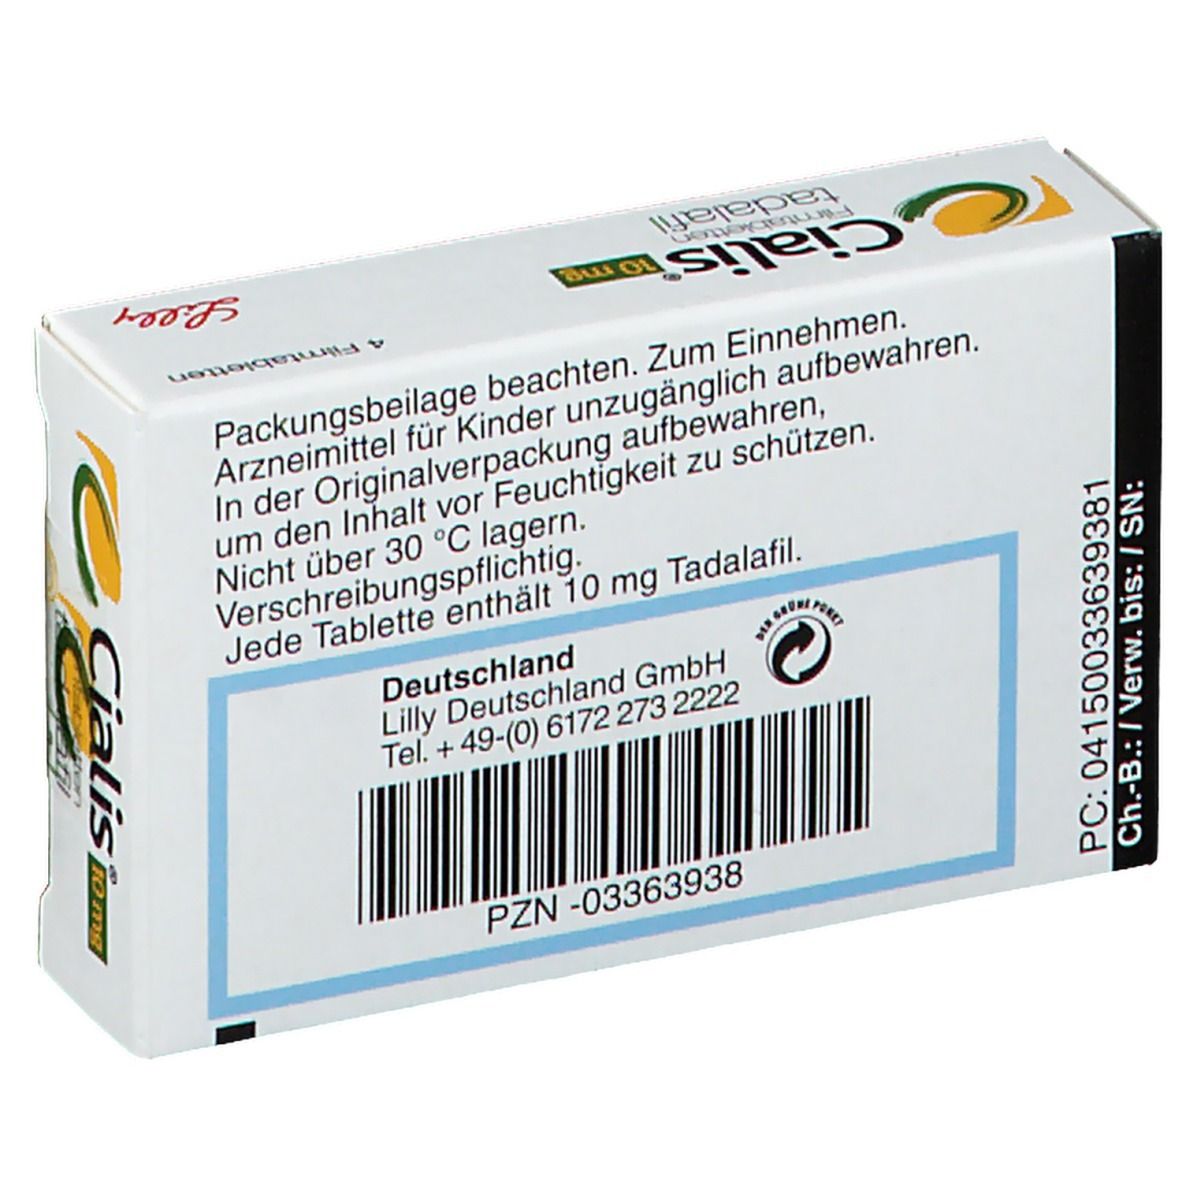 Cialis® 10 mg